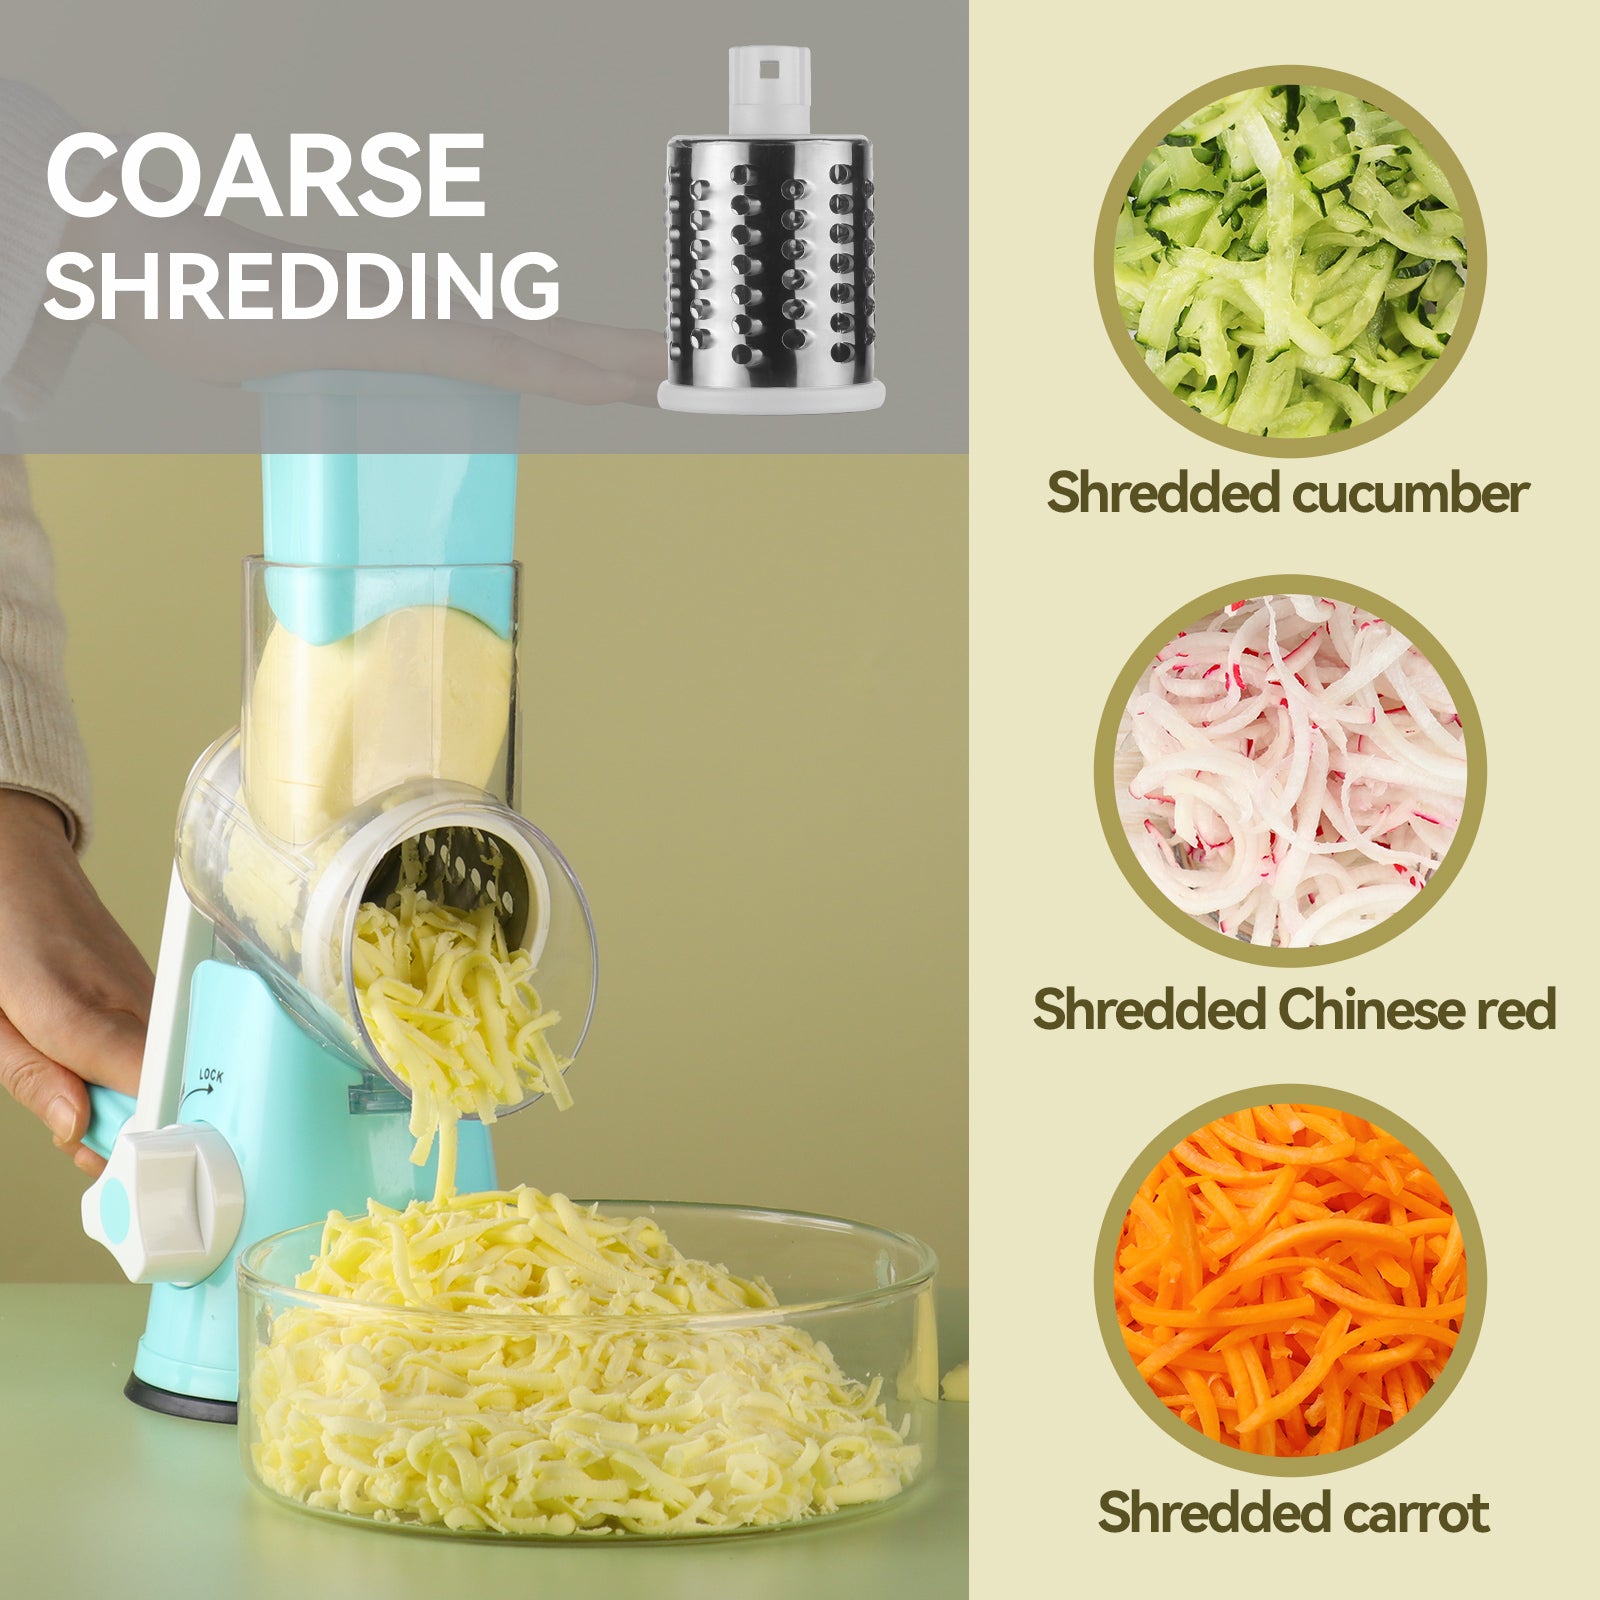 Manual Vegetable Slicer Fruit Cutter Cheese Shredder Speedy Rotary